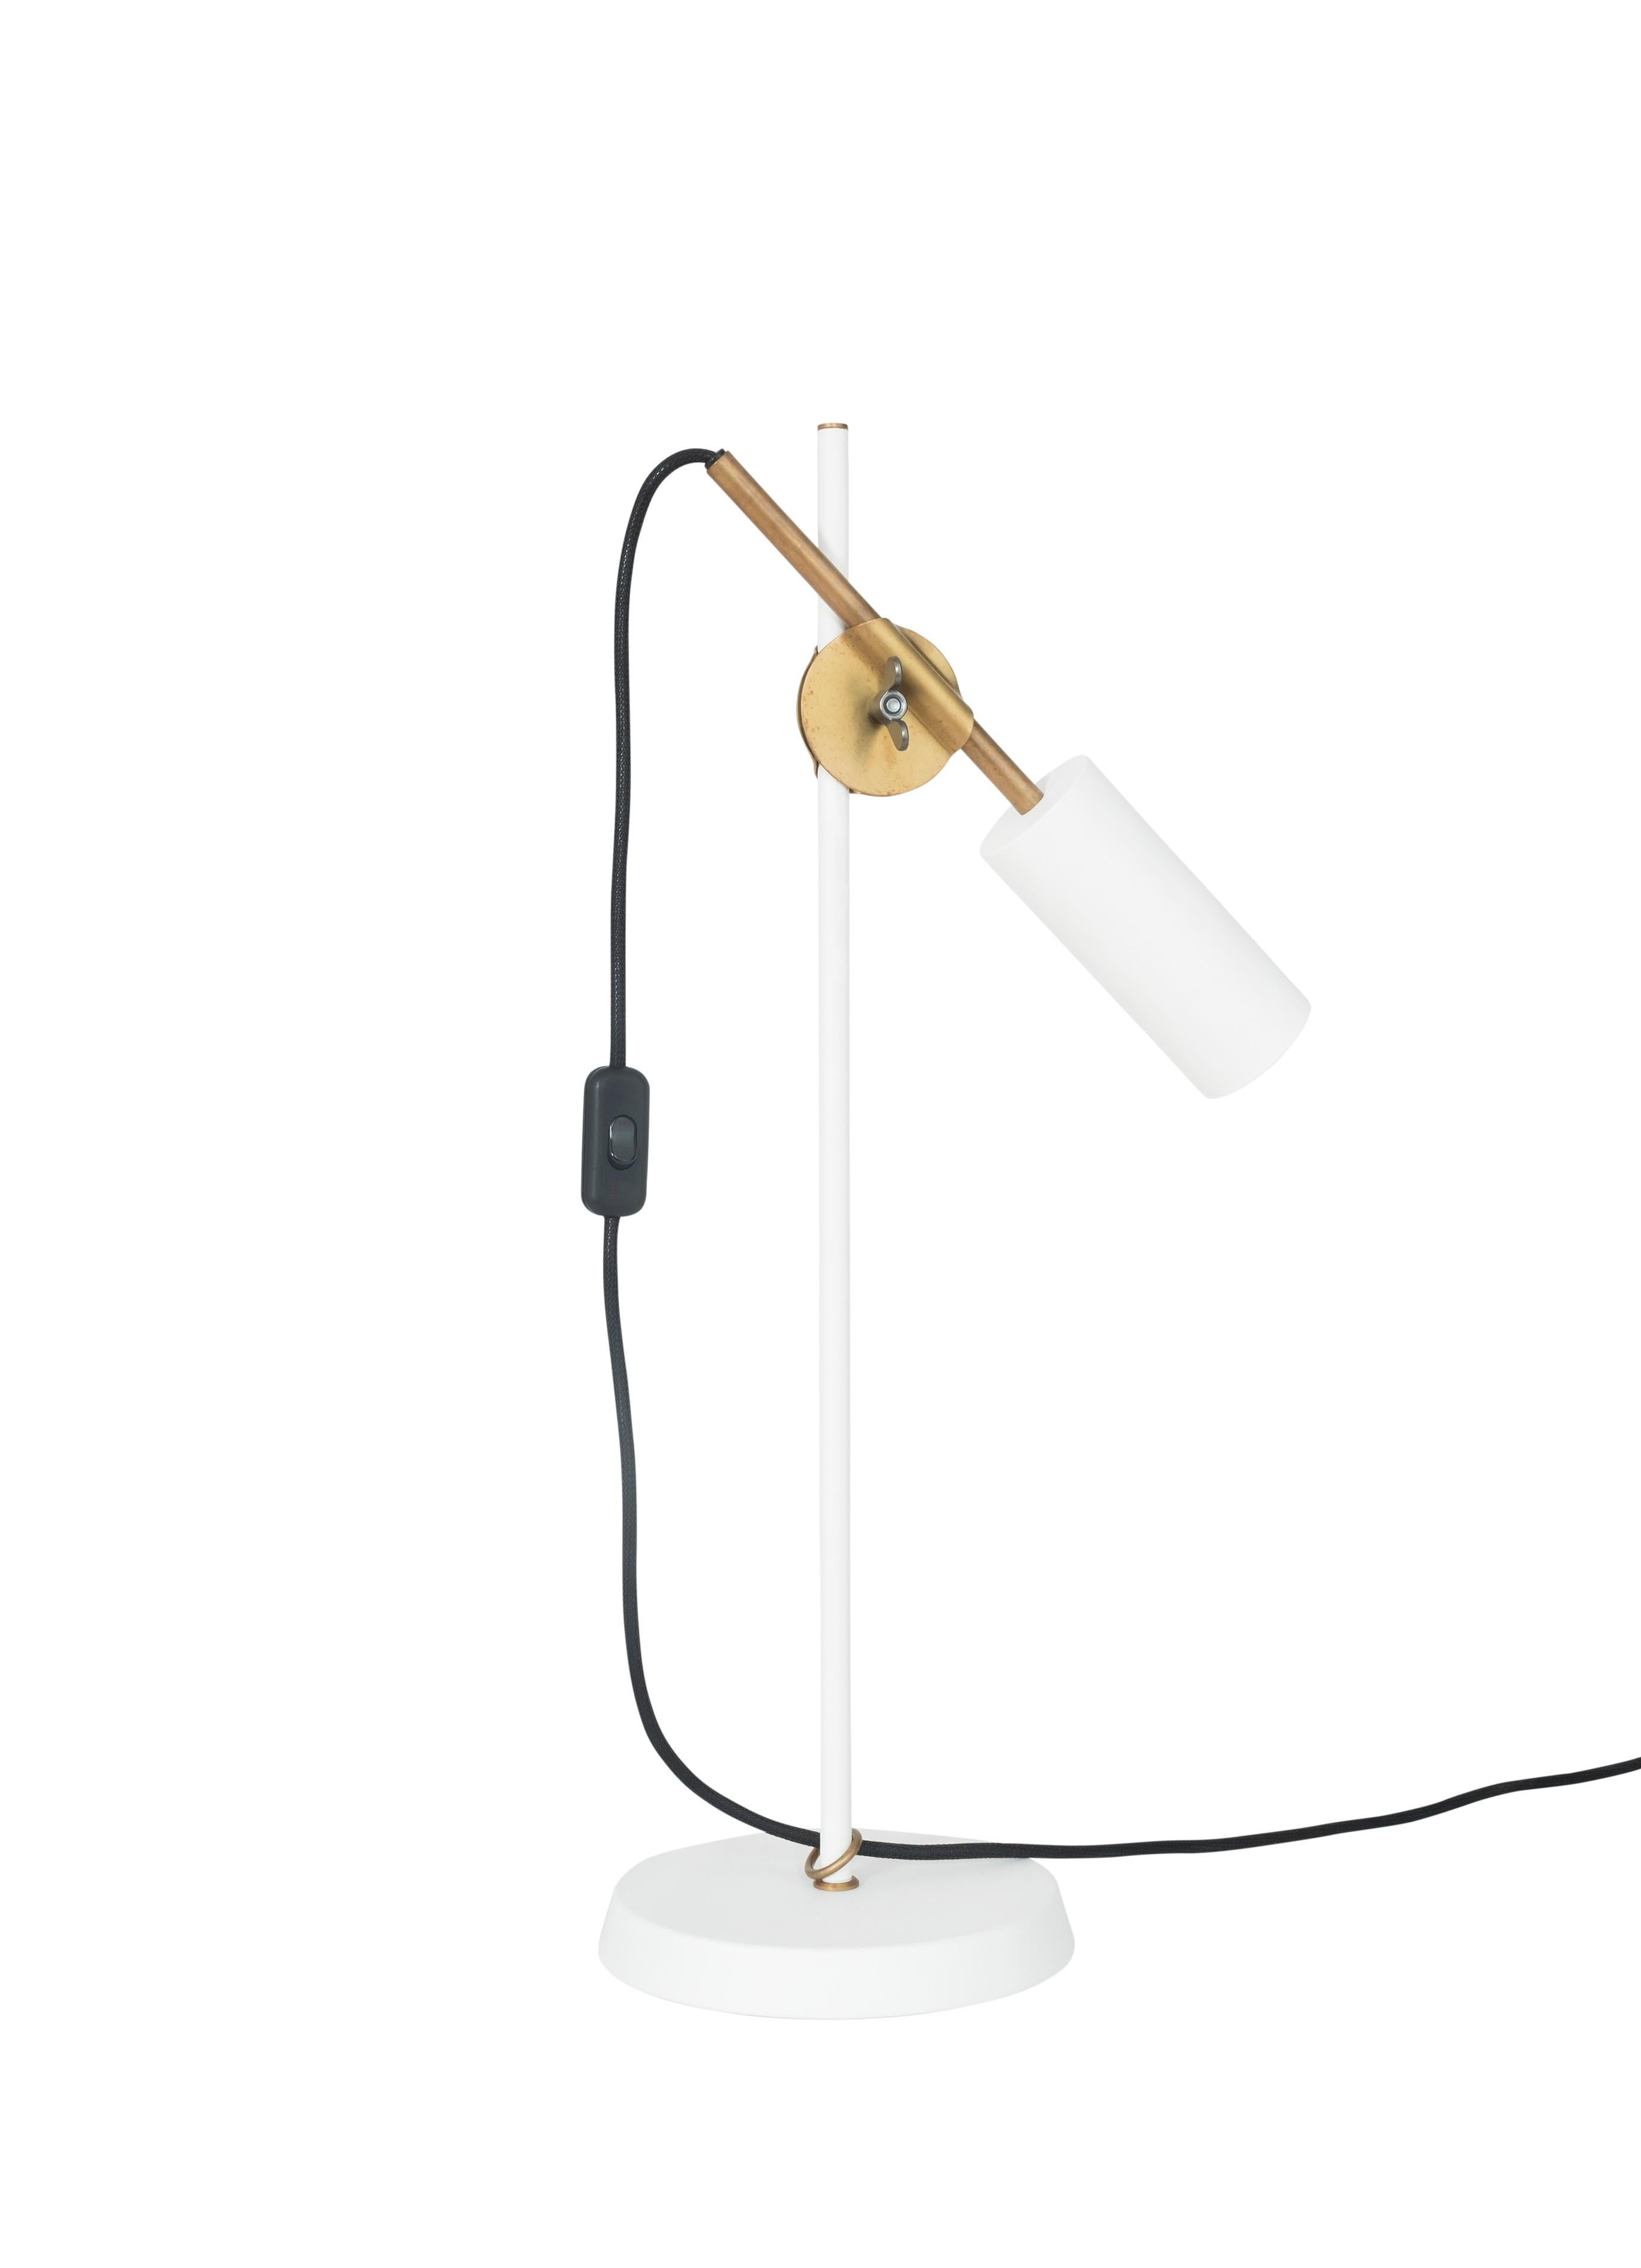 Contemporary Johan Carpner Stav White Table Lamp by Konsthantverk For Sale